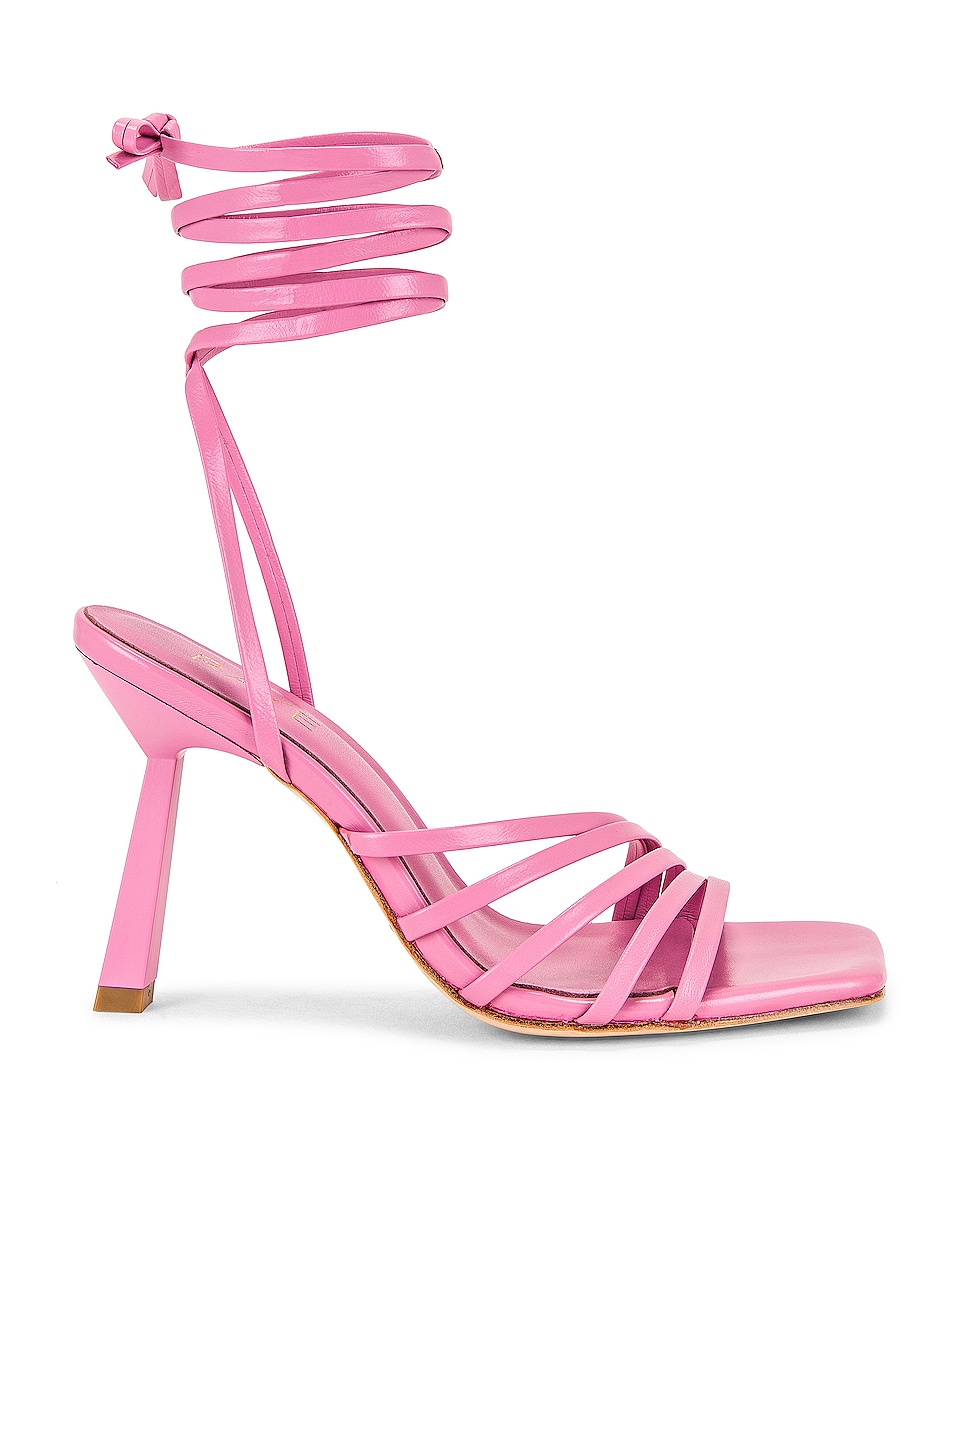 RAYE Sookie Heel in Pink | REVOLVE